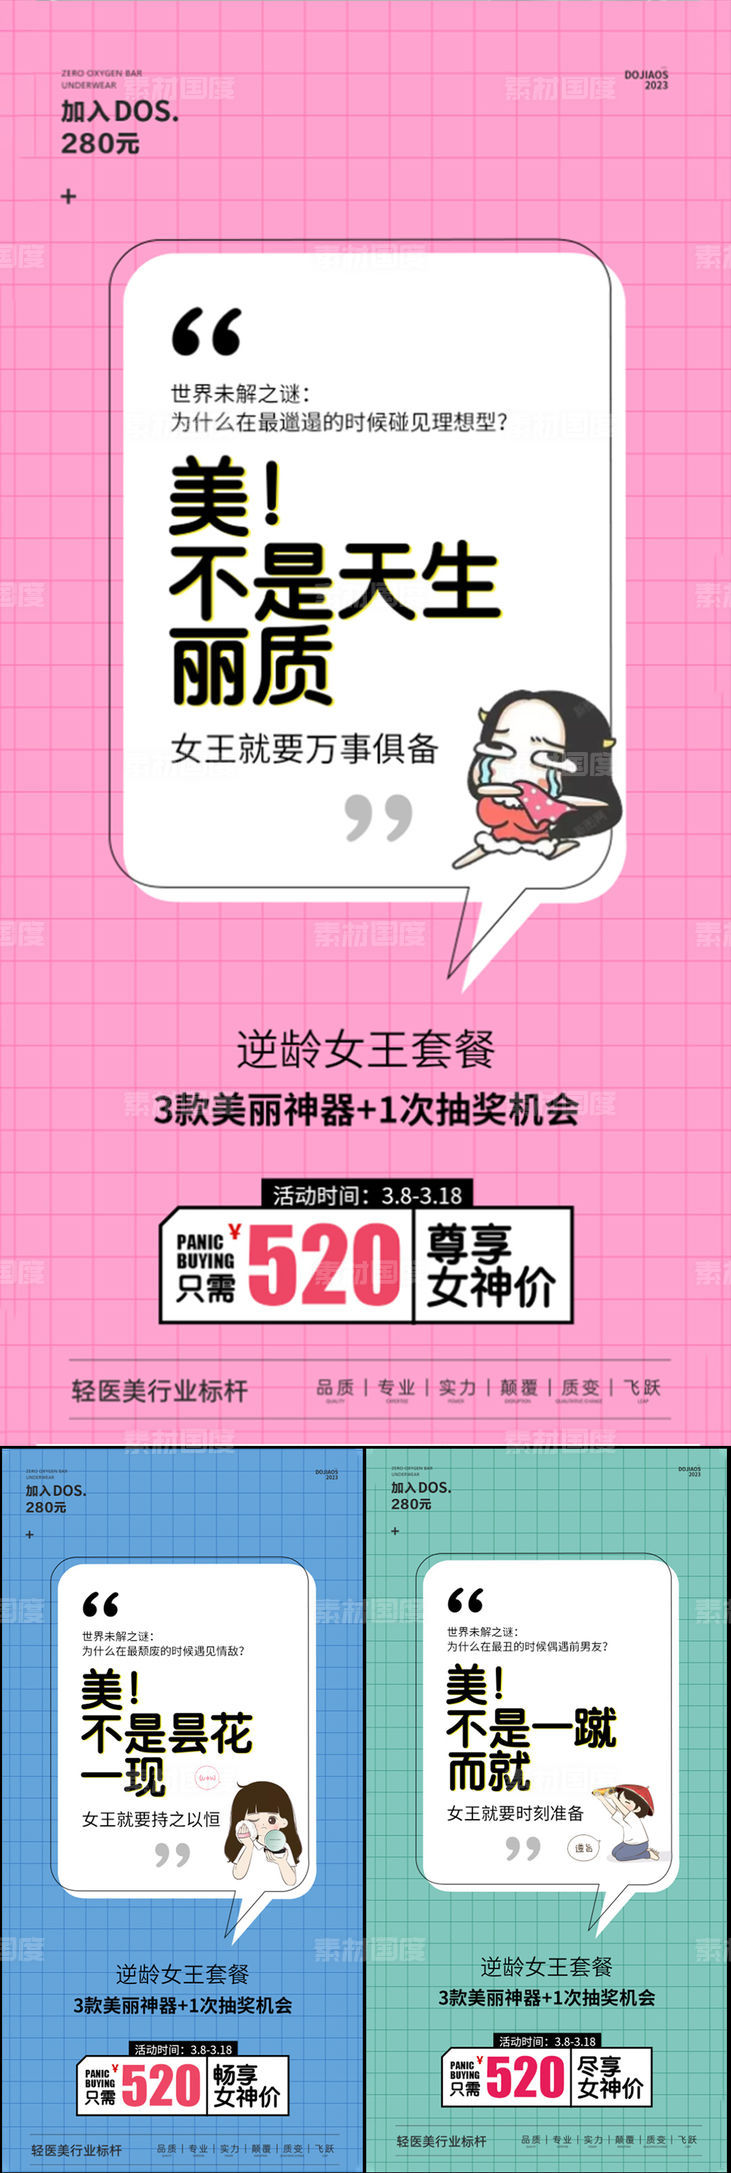 女神节520美妆抽奖促销圈图海报